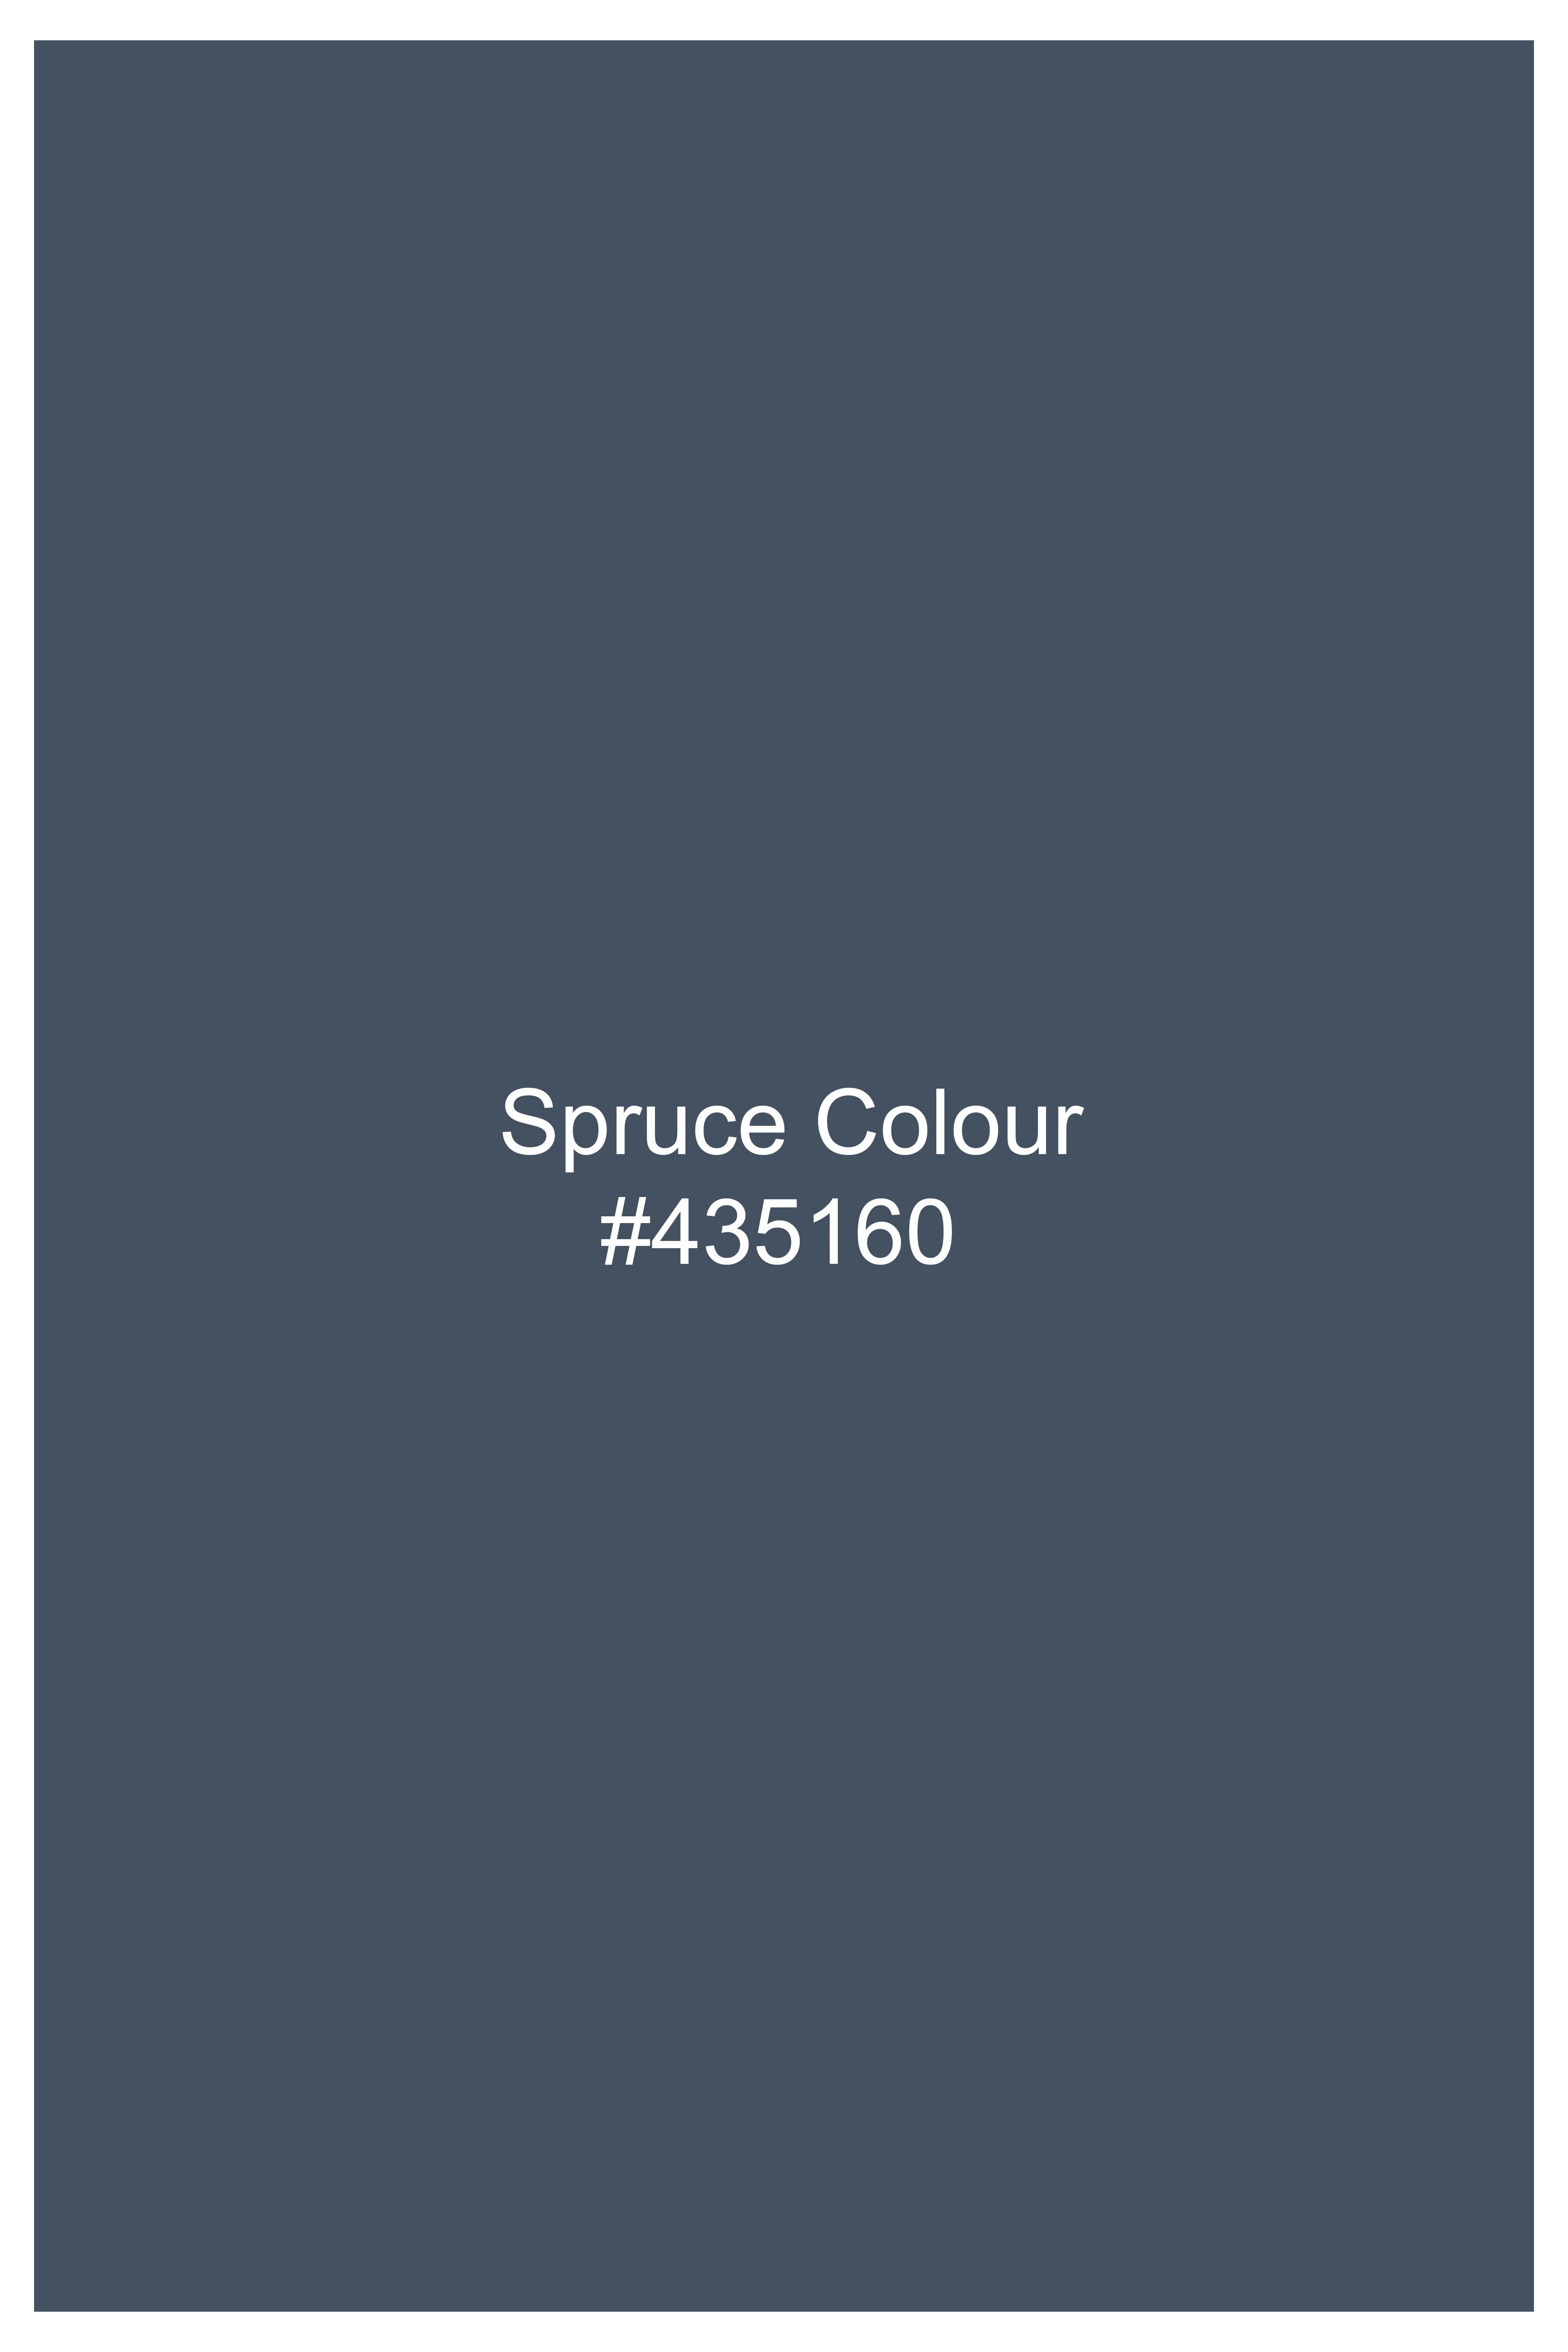 Spruce Blue Tweed Waistcoat V2735-36, V2735-38, V2735-40, V2735-42, V2735-44, V2735-46, V2735-48, V2735-50, V2735-52, V2735-54, V2735-56, V2735-58, V2735-60